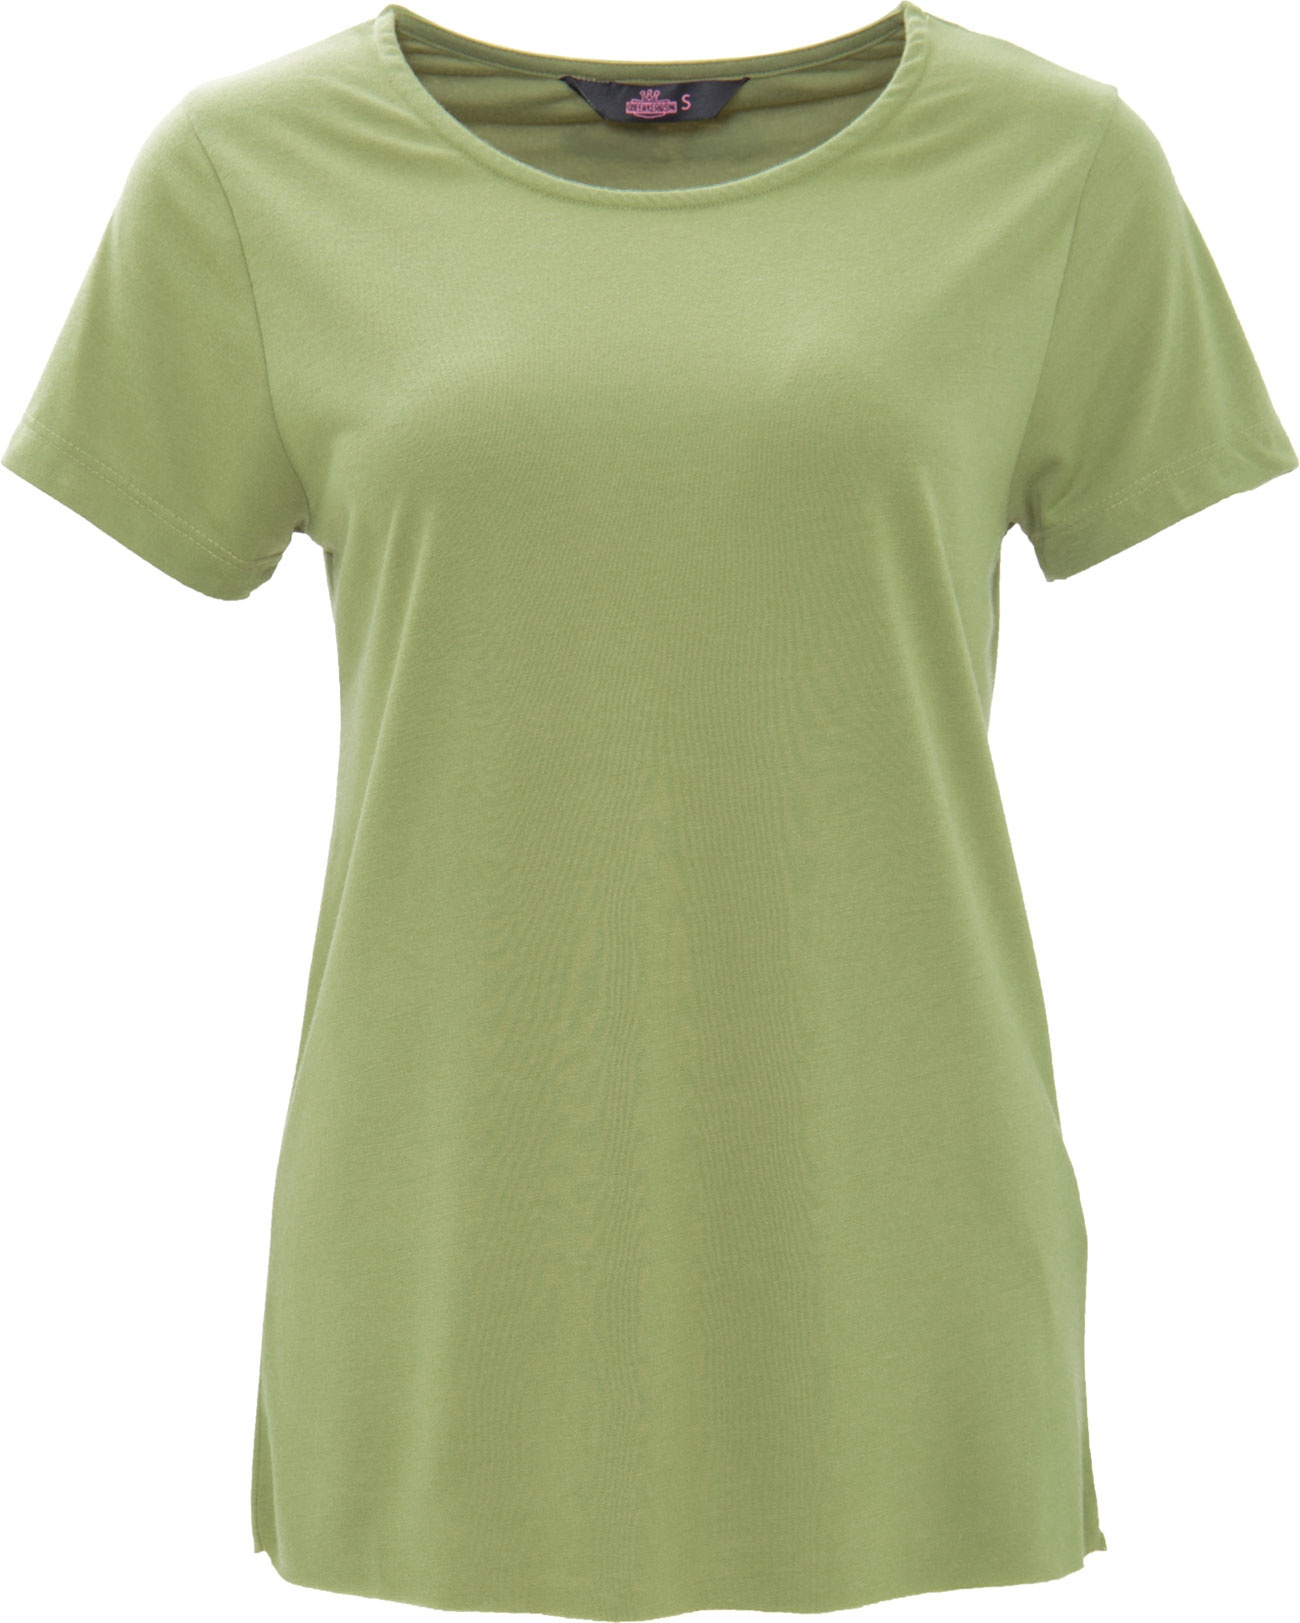 Queen Kerosin Basic, t-shirt femme - Vert - L